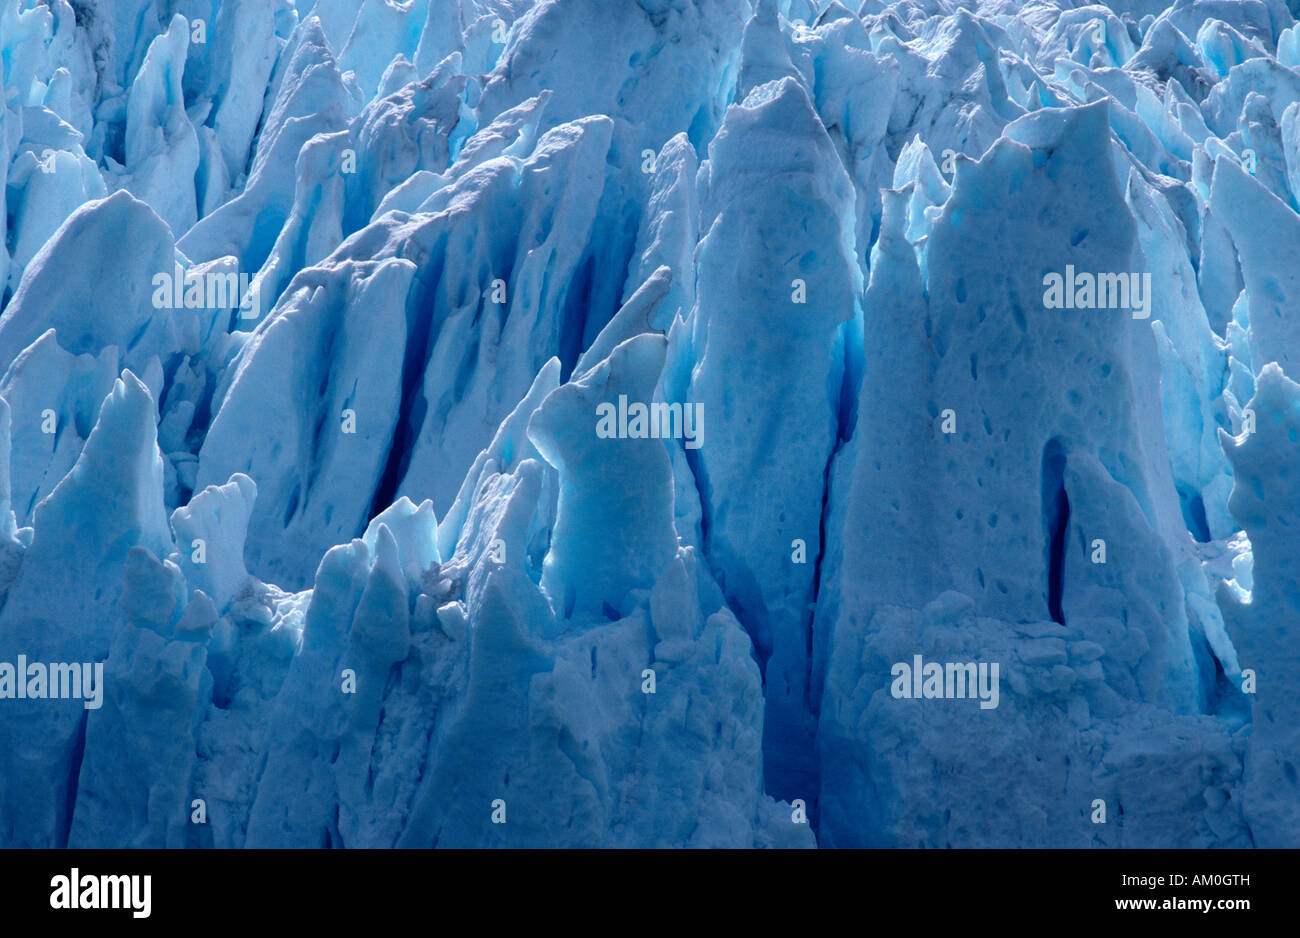 Perito Moreno glacier at Lago Argentino, Patagonia, Argentina Stock Photo